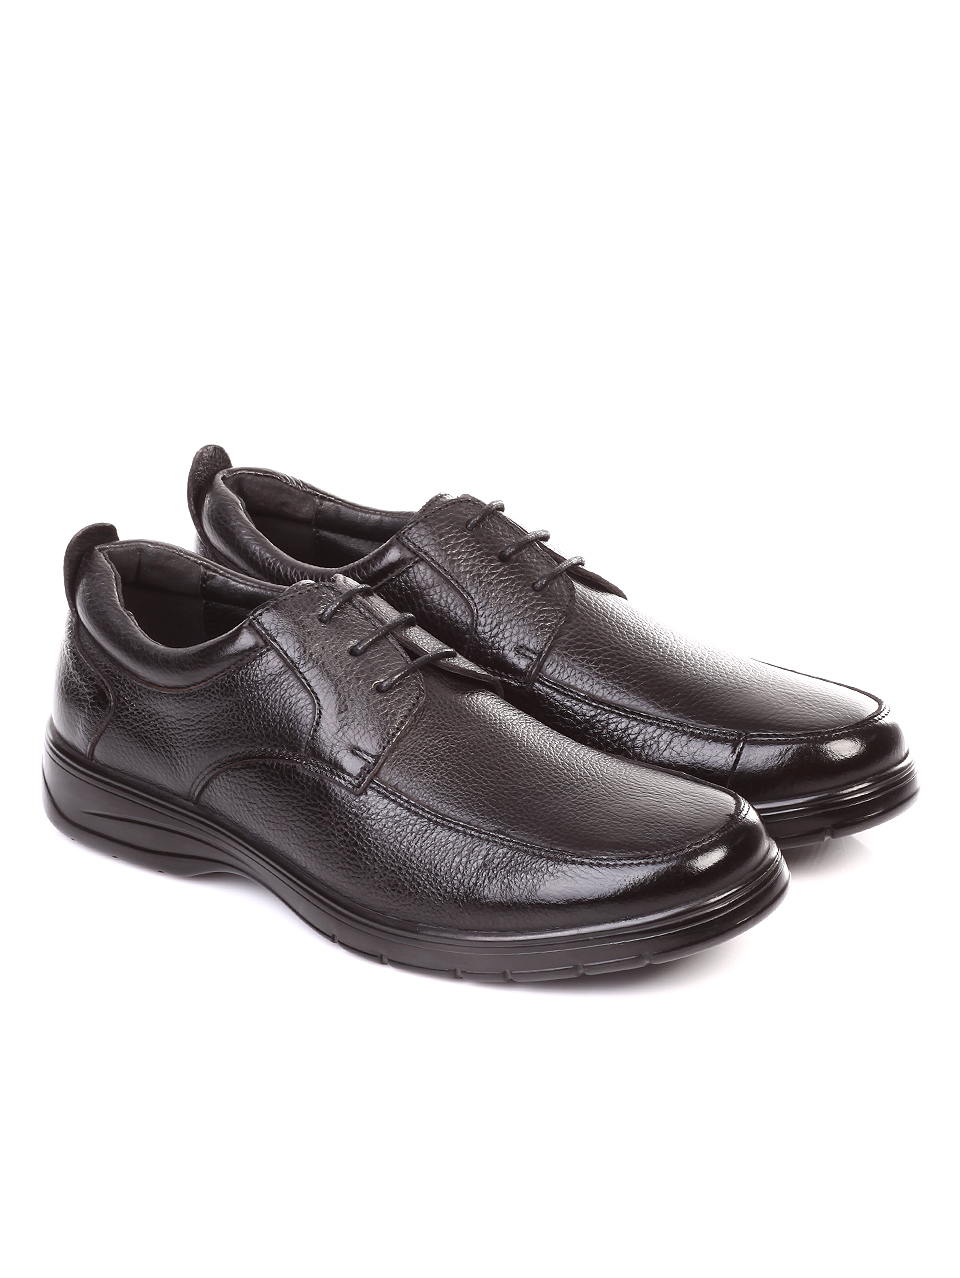 Ежедневни мъжки обувки от естествена кожа 7N-18747 black